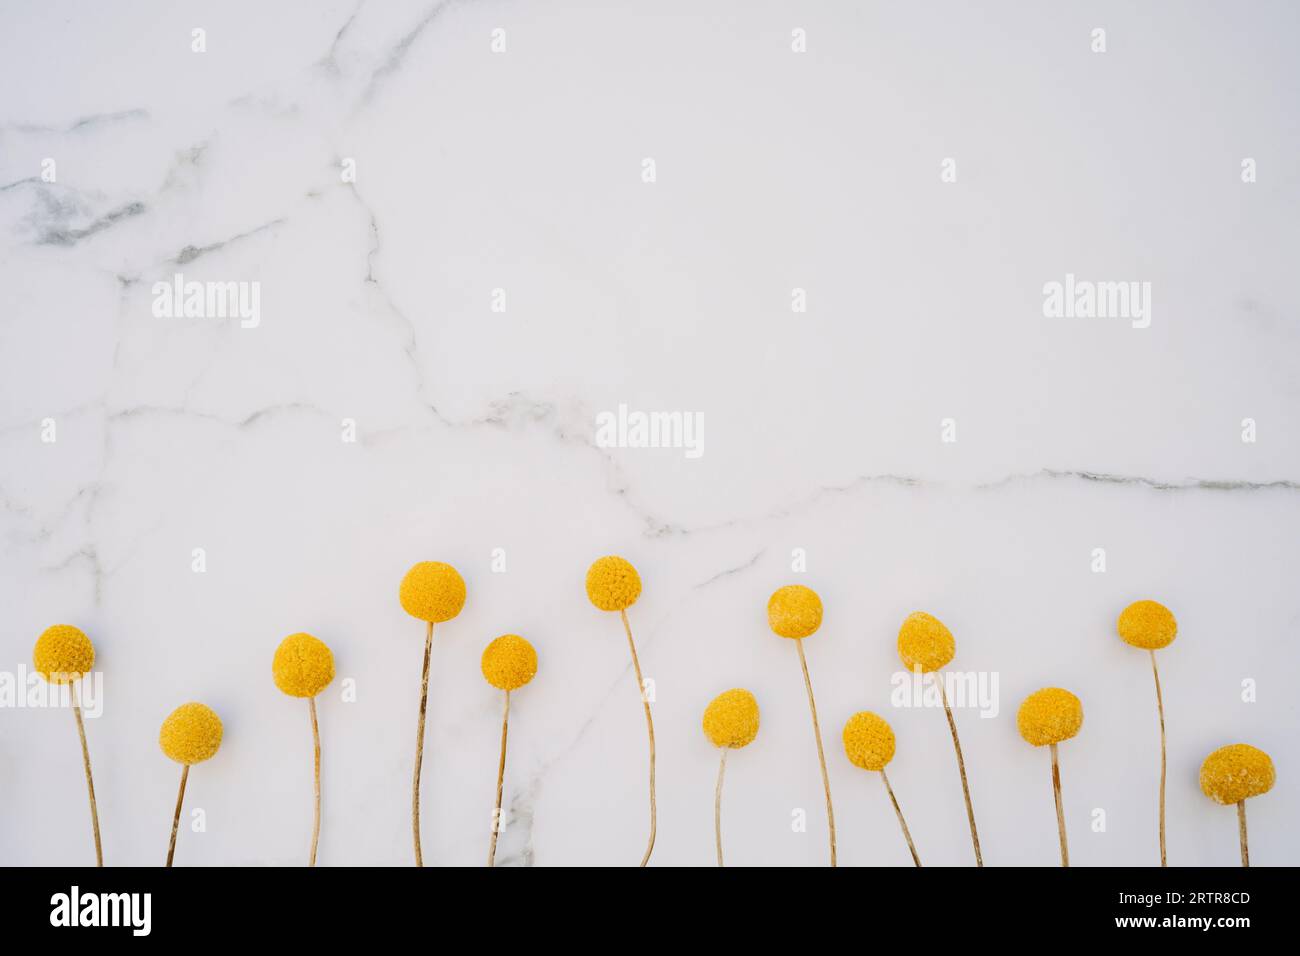 Getrocknete natürliche dekorative gelbe Blumen Craspedia Globosa auf weißem Marmorhintergrund. Draufsicht. Leerzeichen kopieren. Flach liegend Stockfoto